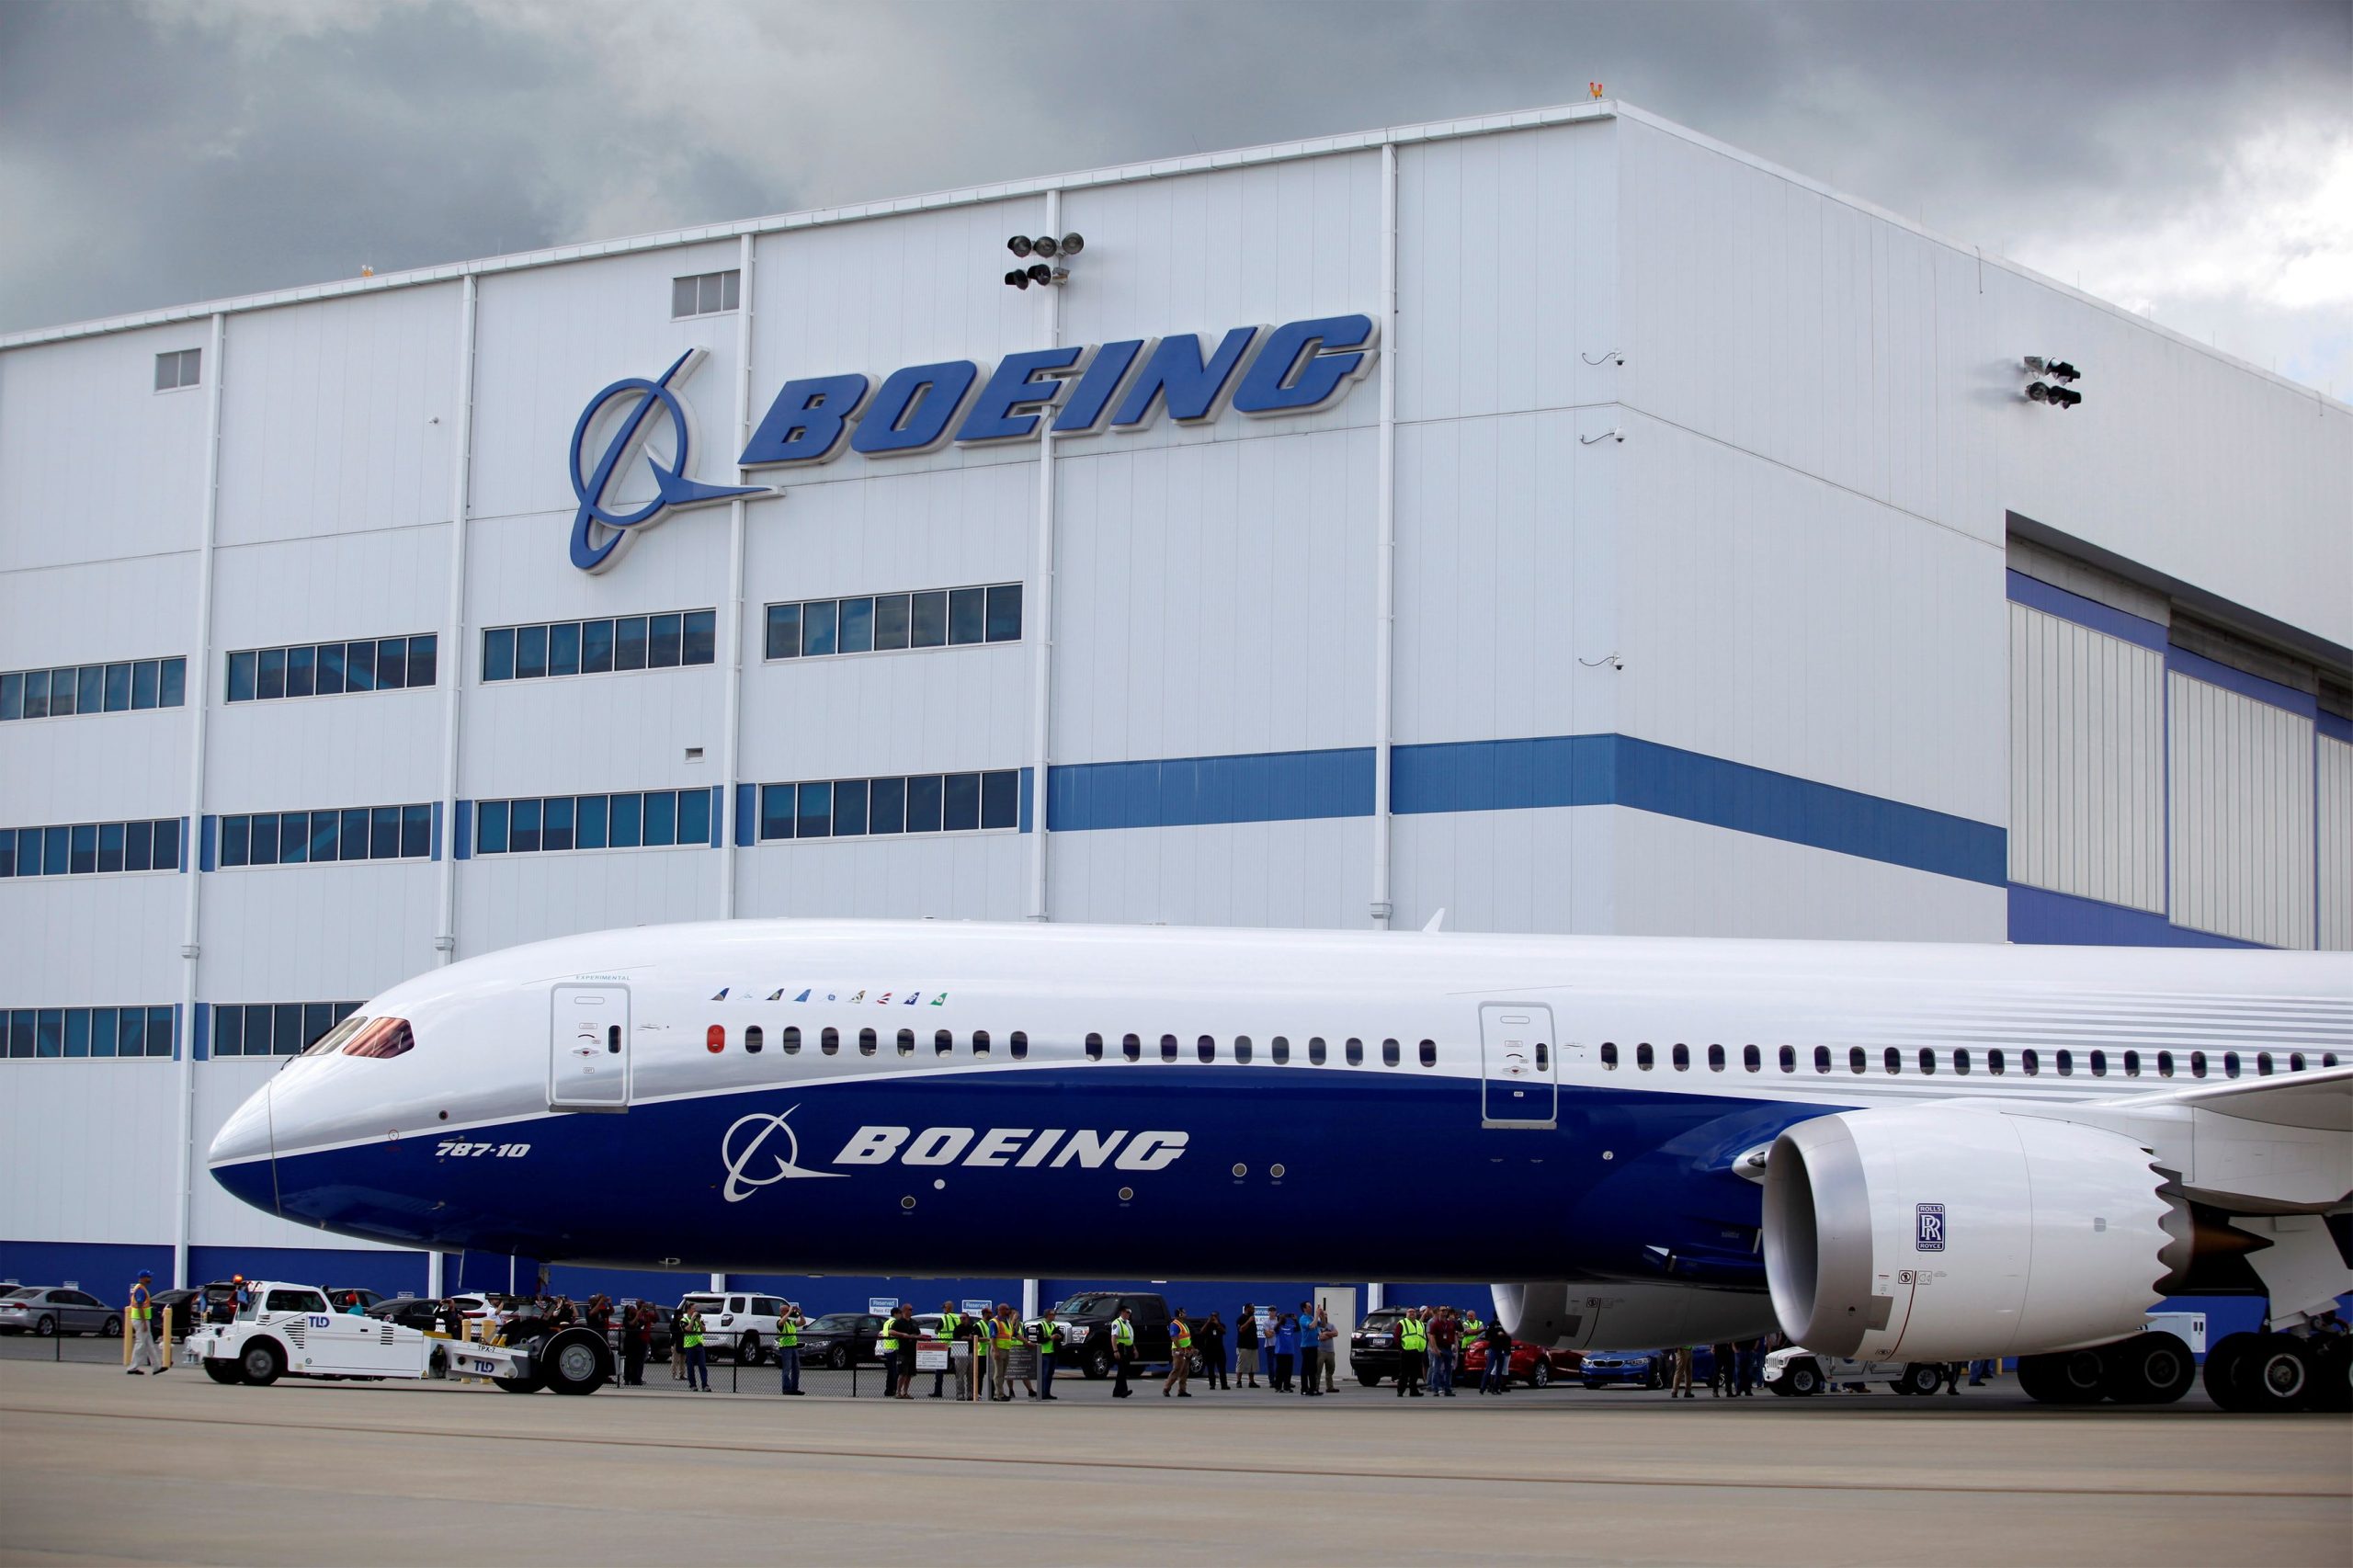 Boeing: Μεγάλη επένδυση στην Ινδία – Στήνει μονάδα μετατροπής επιβατικών 737 σε εμπορικά